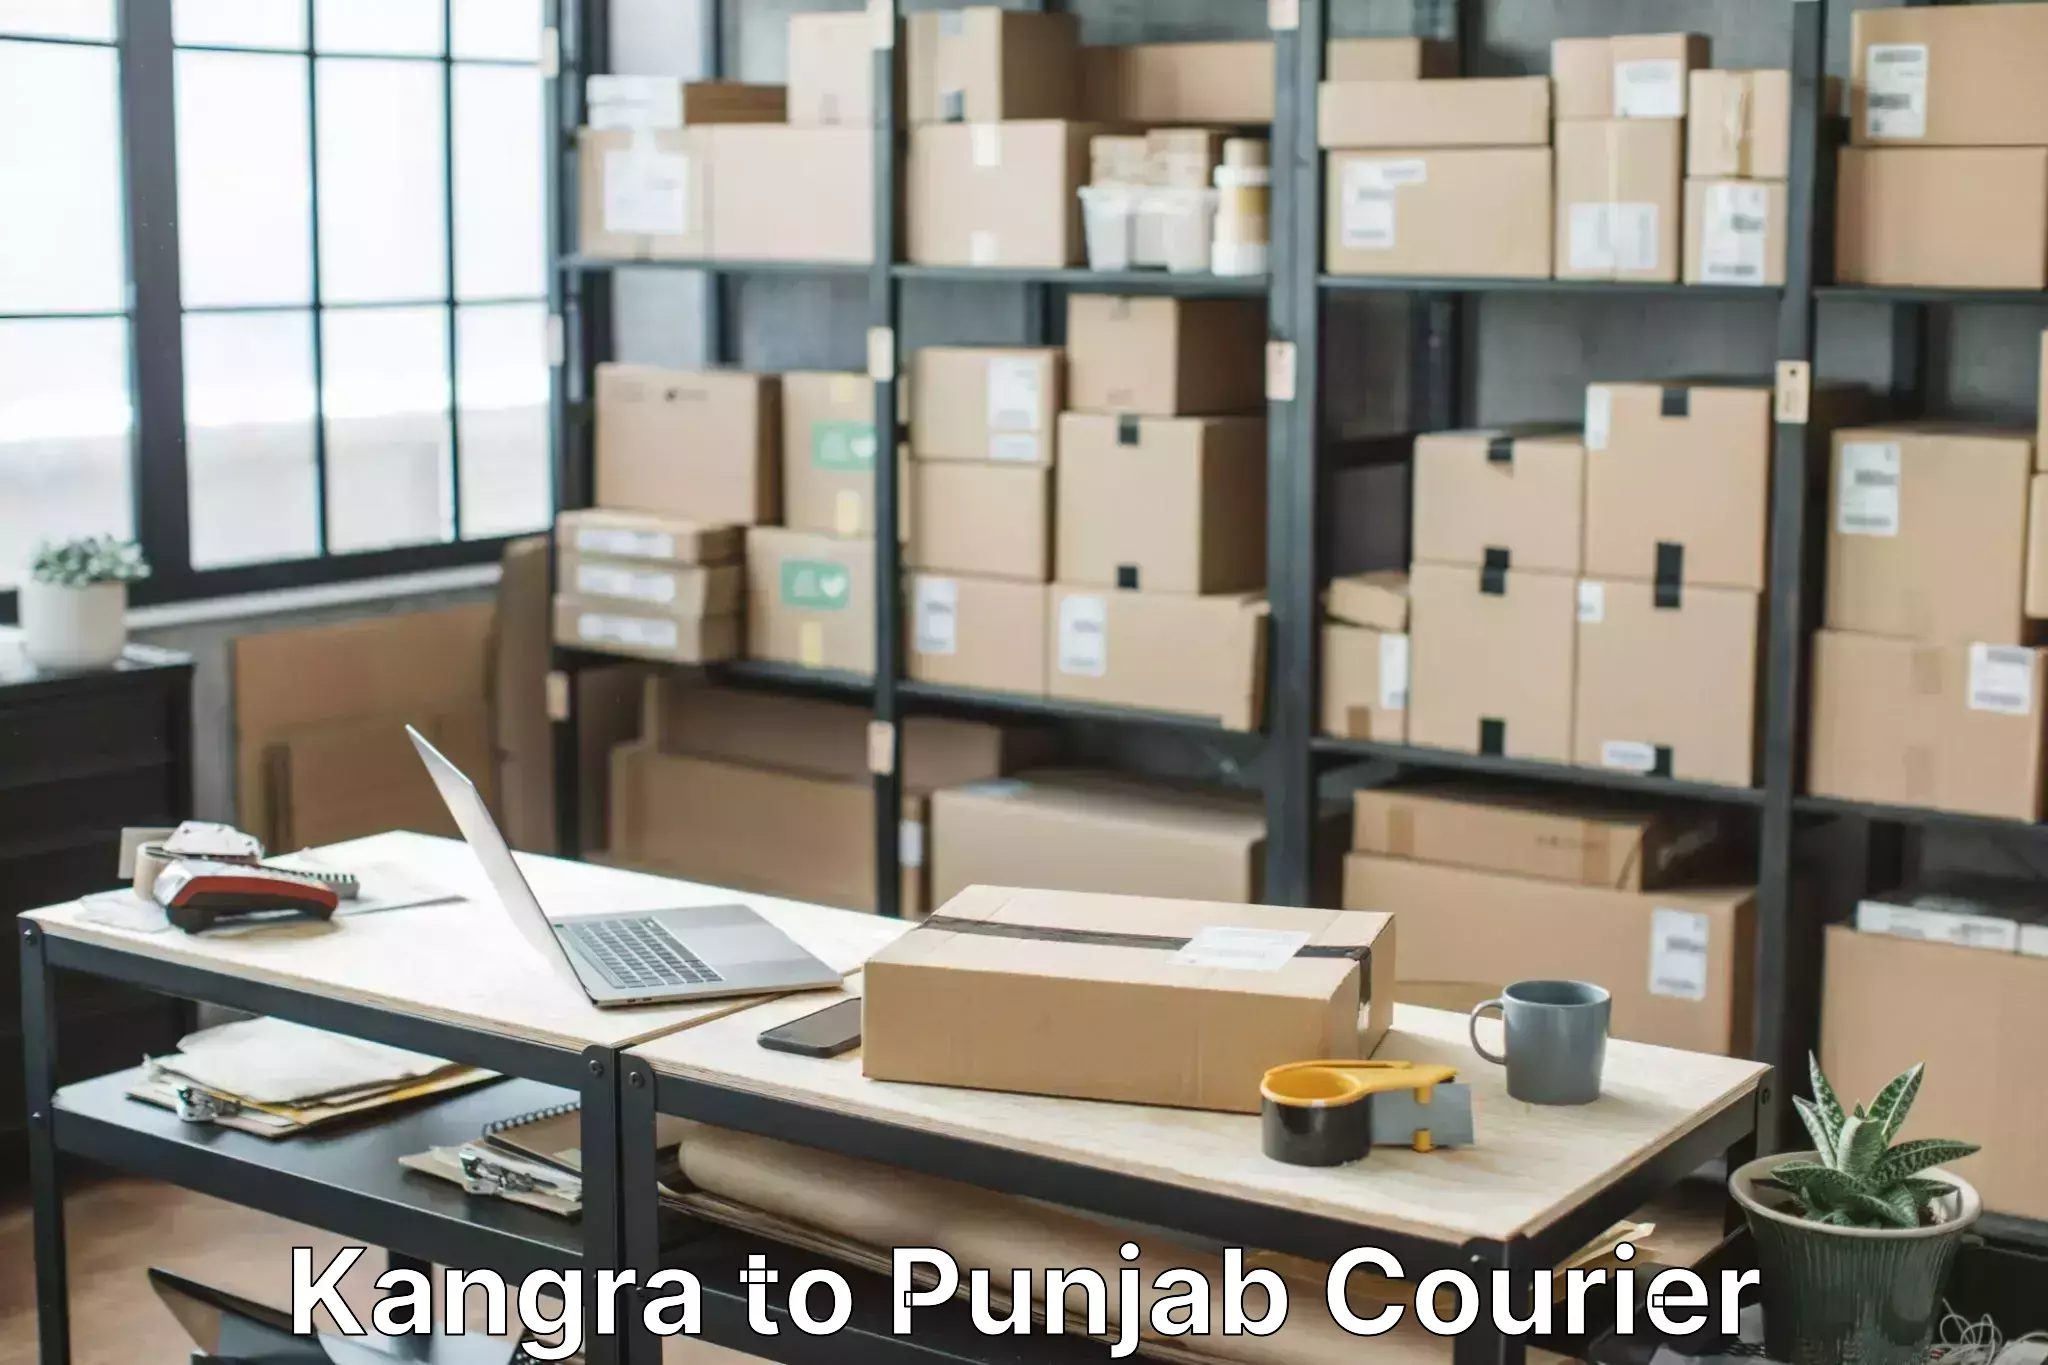 Seamless moving process Kangra to Punjab